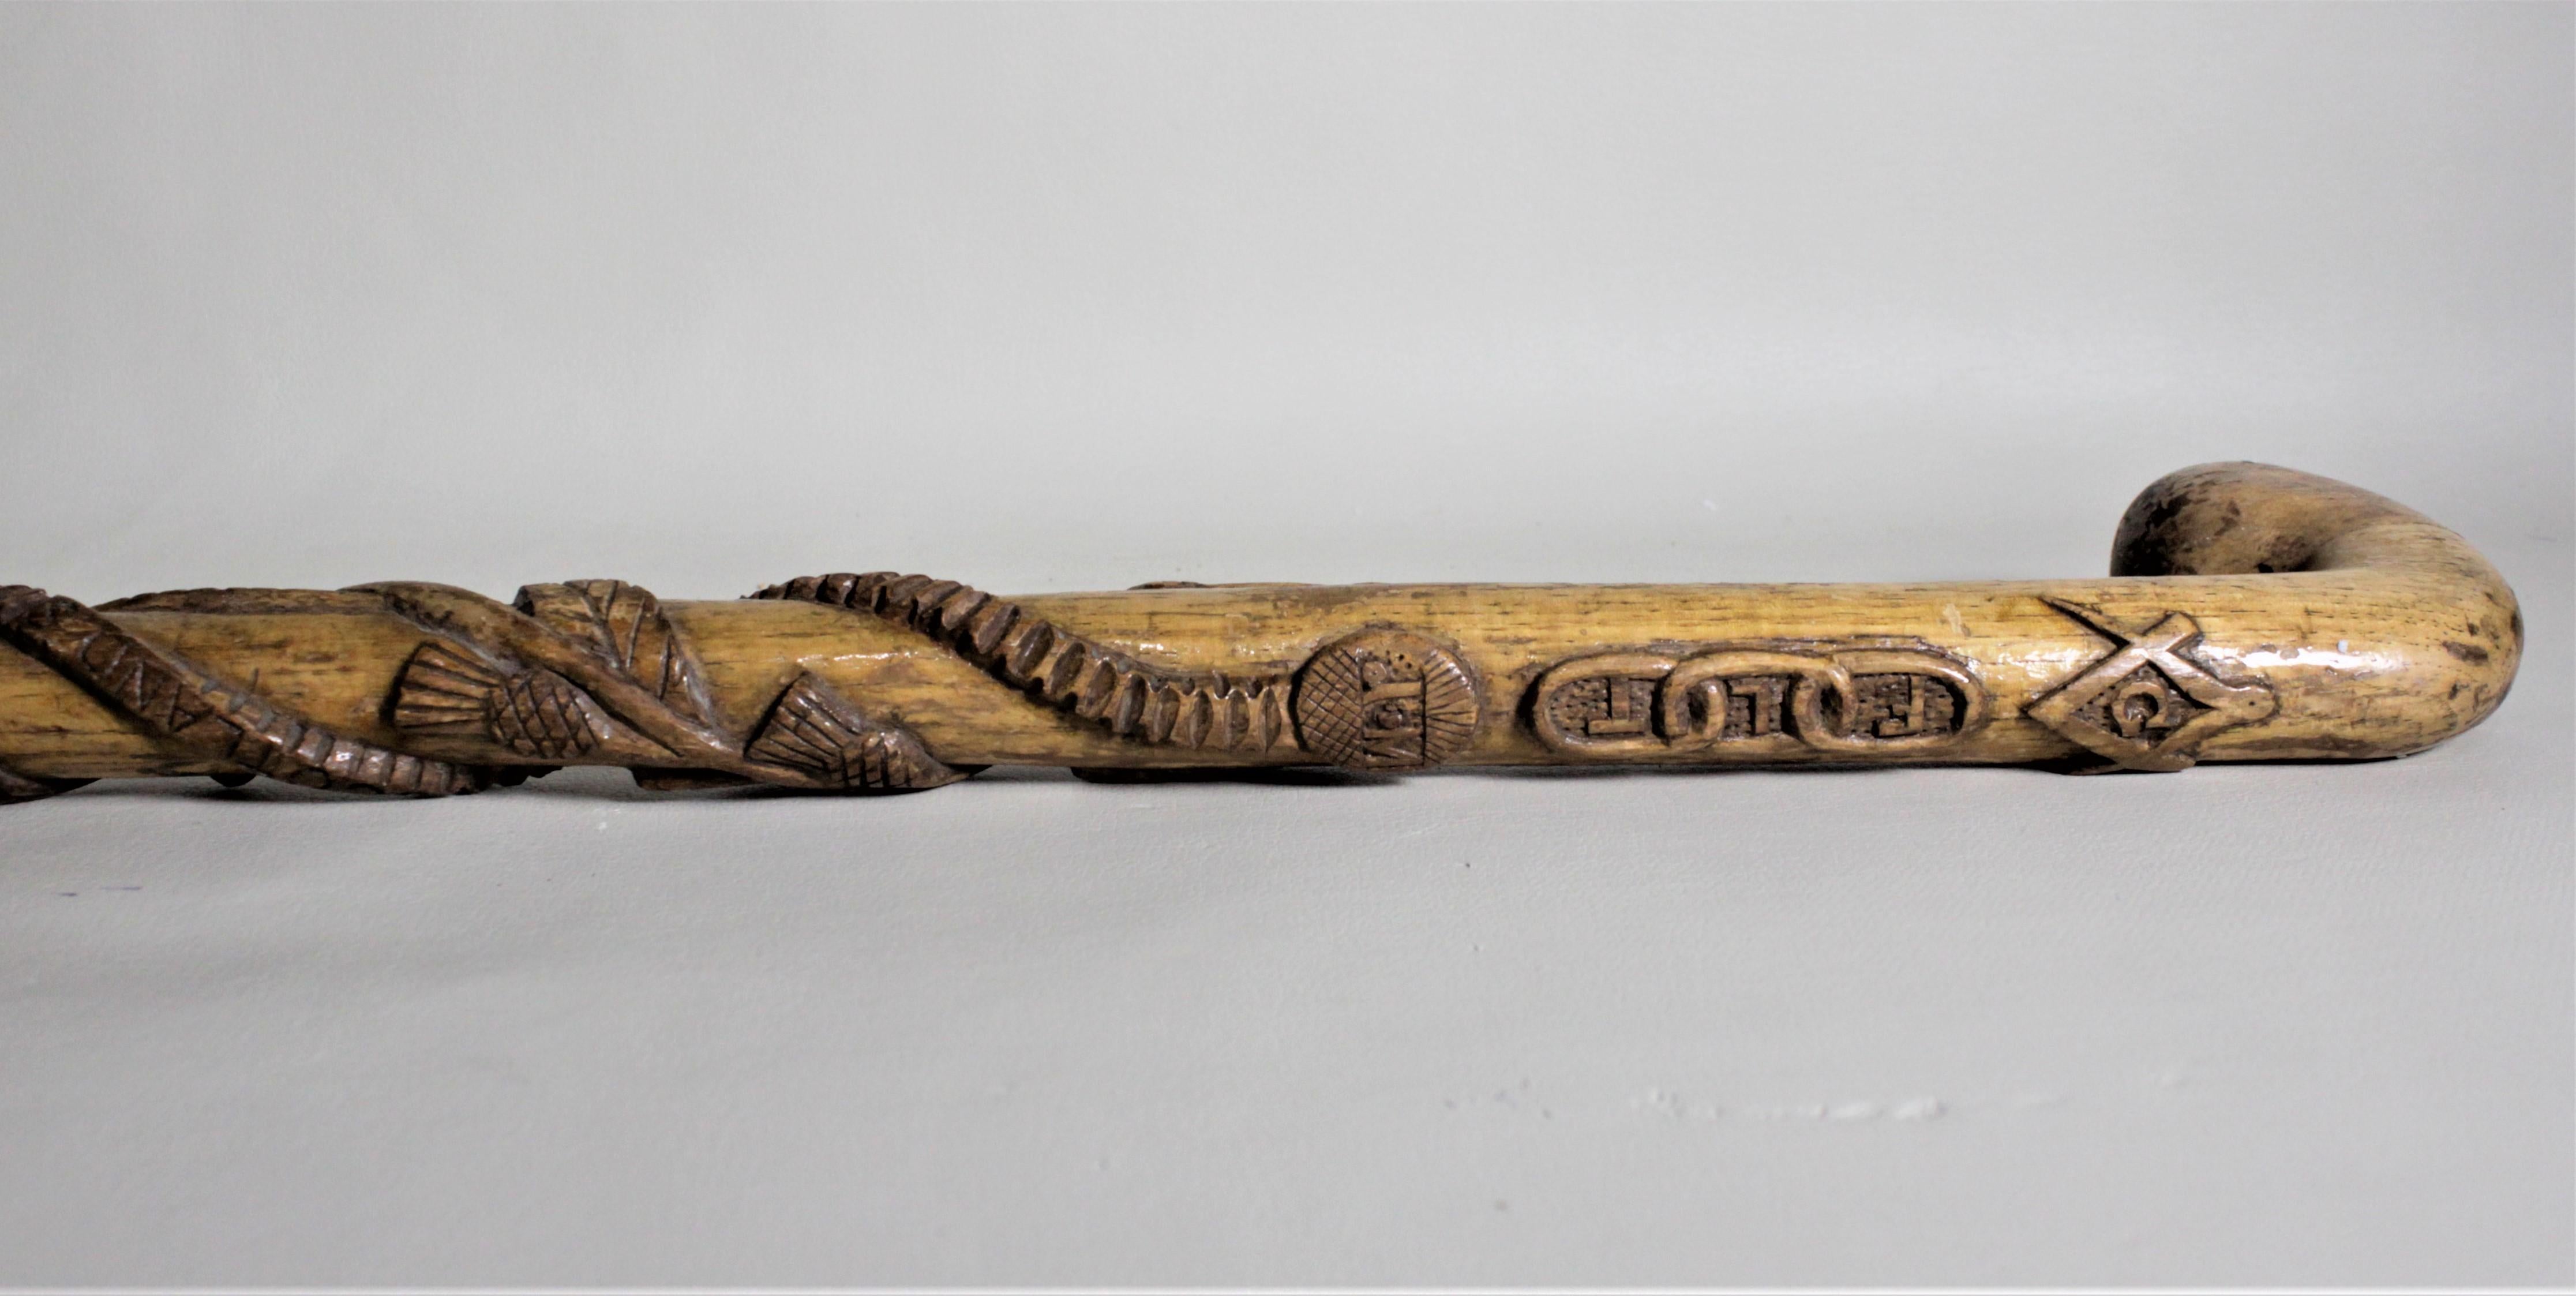 19th Century Antique Folk Art Ornately Carved Scottish Rite or Masonic Lodge Walking Cane